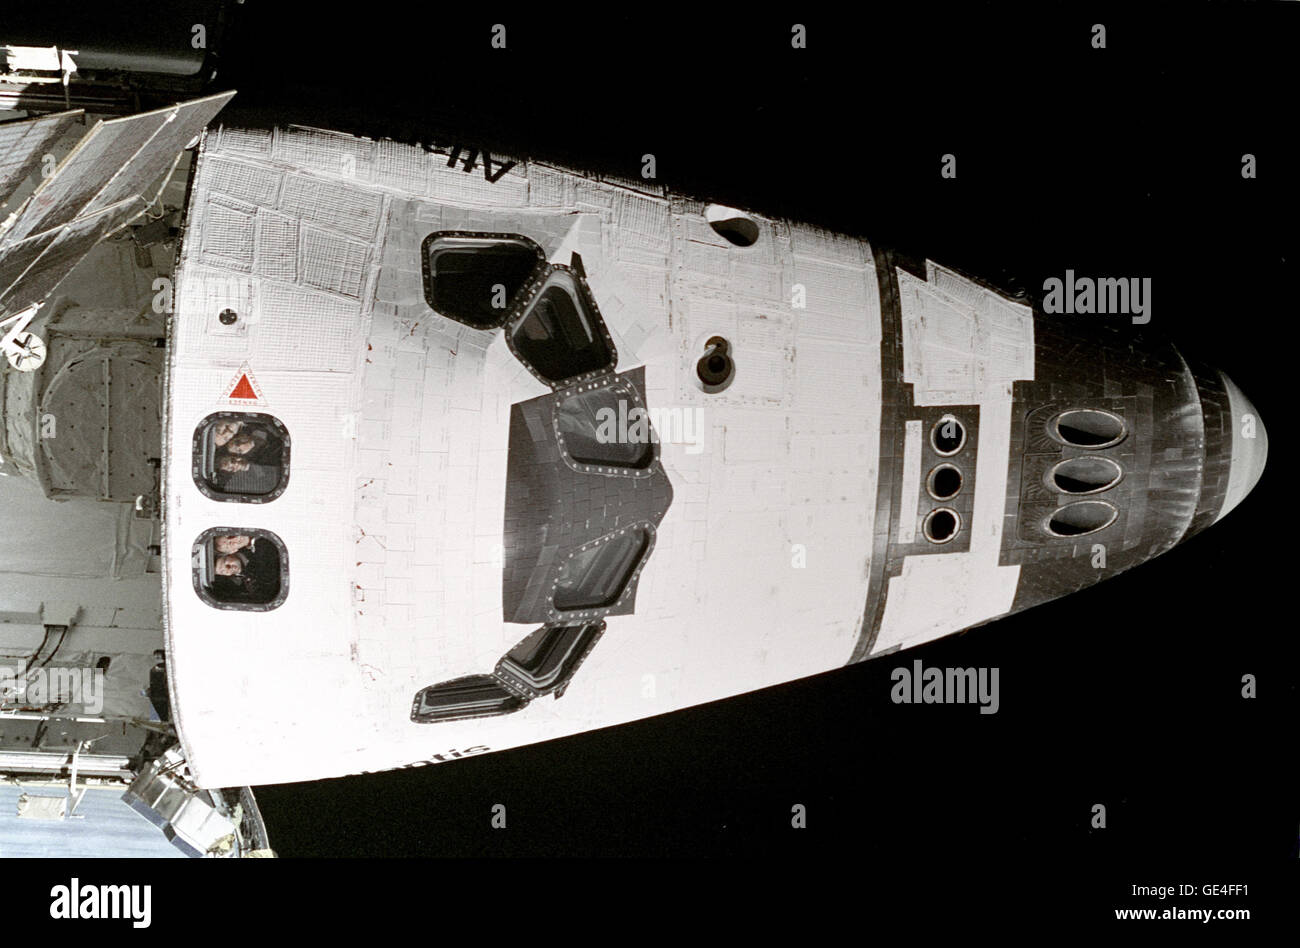 I cinque STS-74 gli astronauti a bordo della navetta spaziale Atlantis look out tettuccio di windows su aft deck di volo verso i loro omologhi a bordo della Mir russa stazione spaziale con la quale avevano appena rendezvoused. Il suo equipaggio (dall'alto) gli astronauti sono: Kenneth D. Cameron, Comandante della Missione; Jerry L. Ross, lo specialista di missione; James D. Halsell Jr., pilota; William S. McArthur Jr., e astronauta canadese Chris A. Hadfield, entrambi gli specialisti di missione. Immagine # : STS074-320-019 Foto Stock